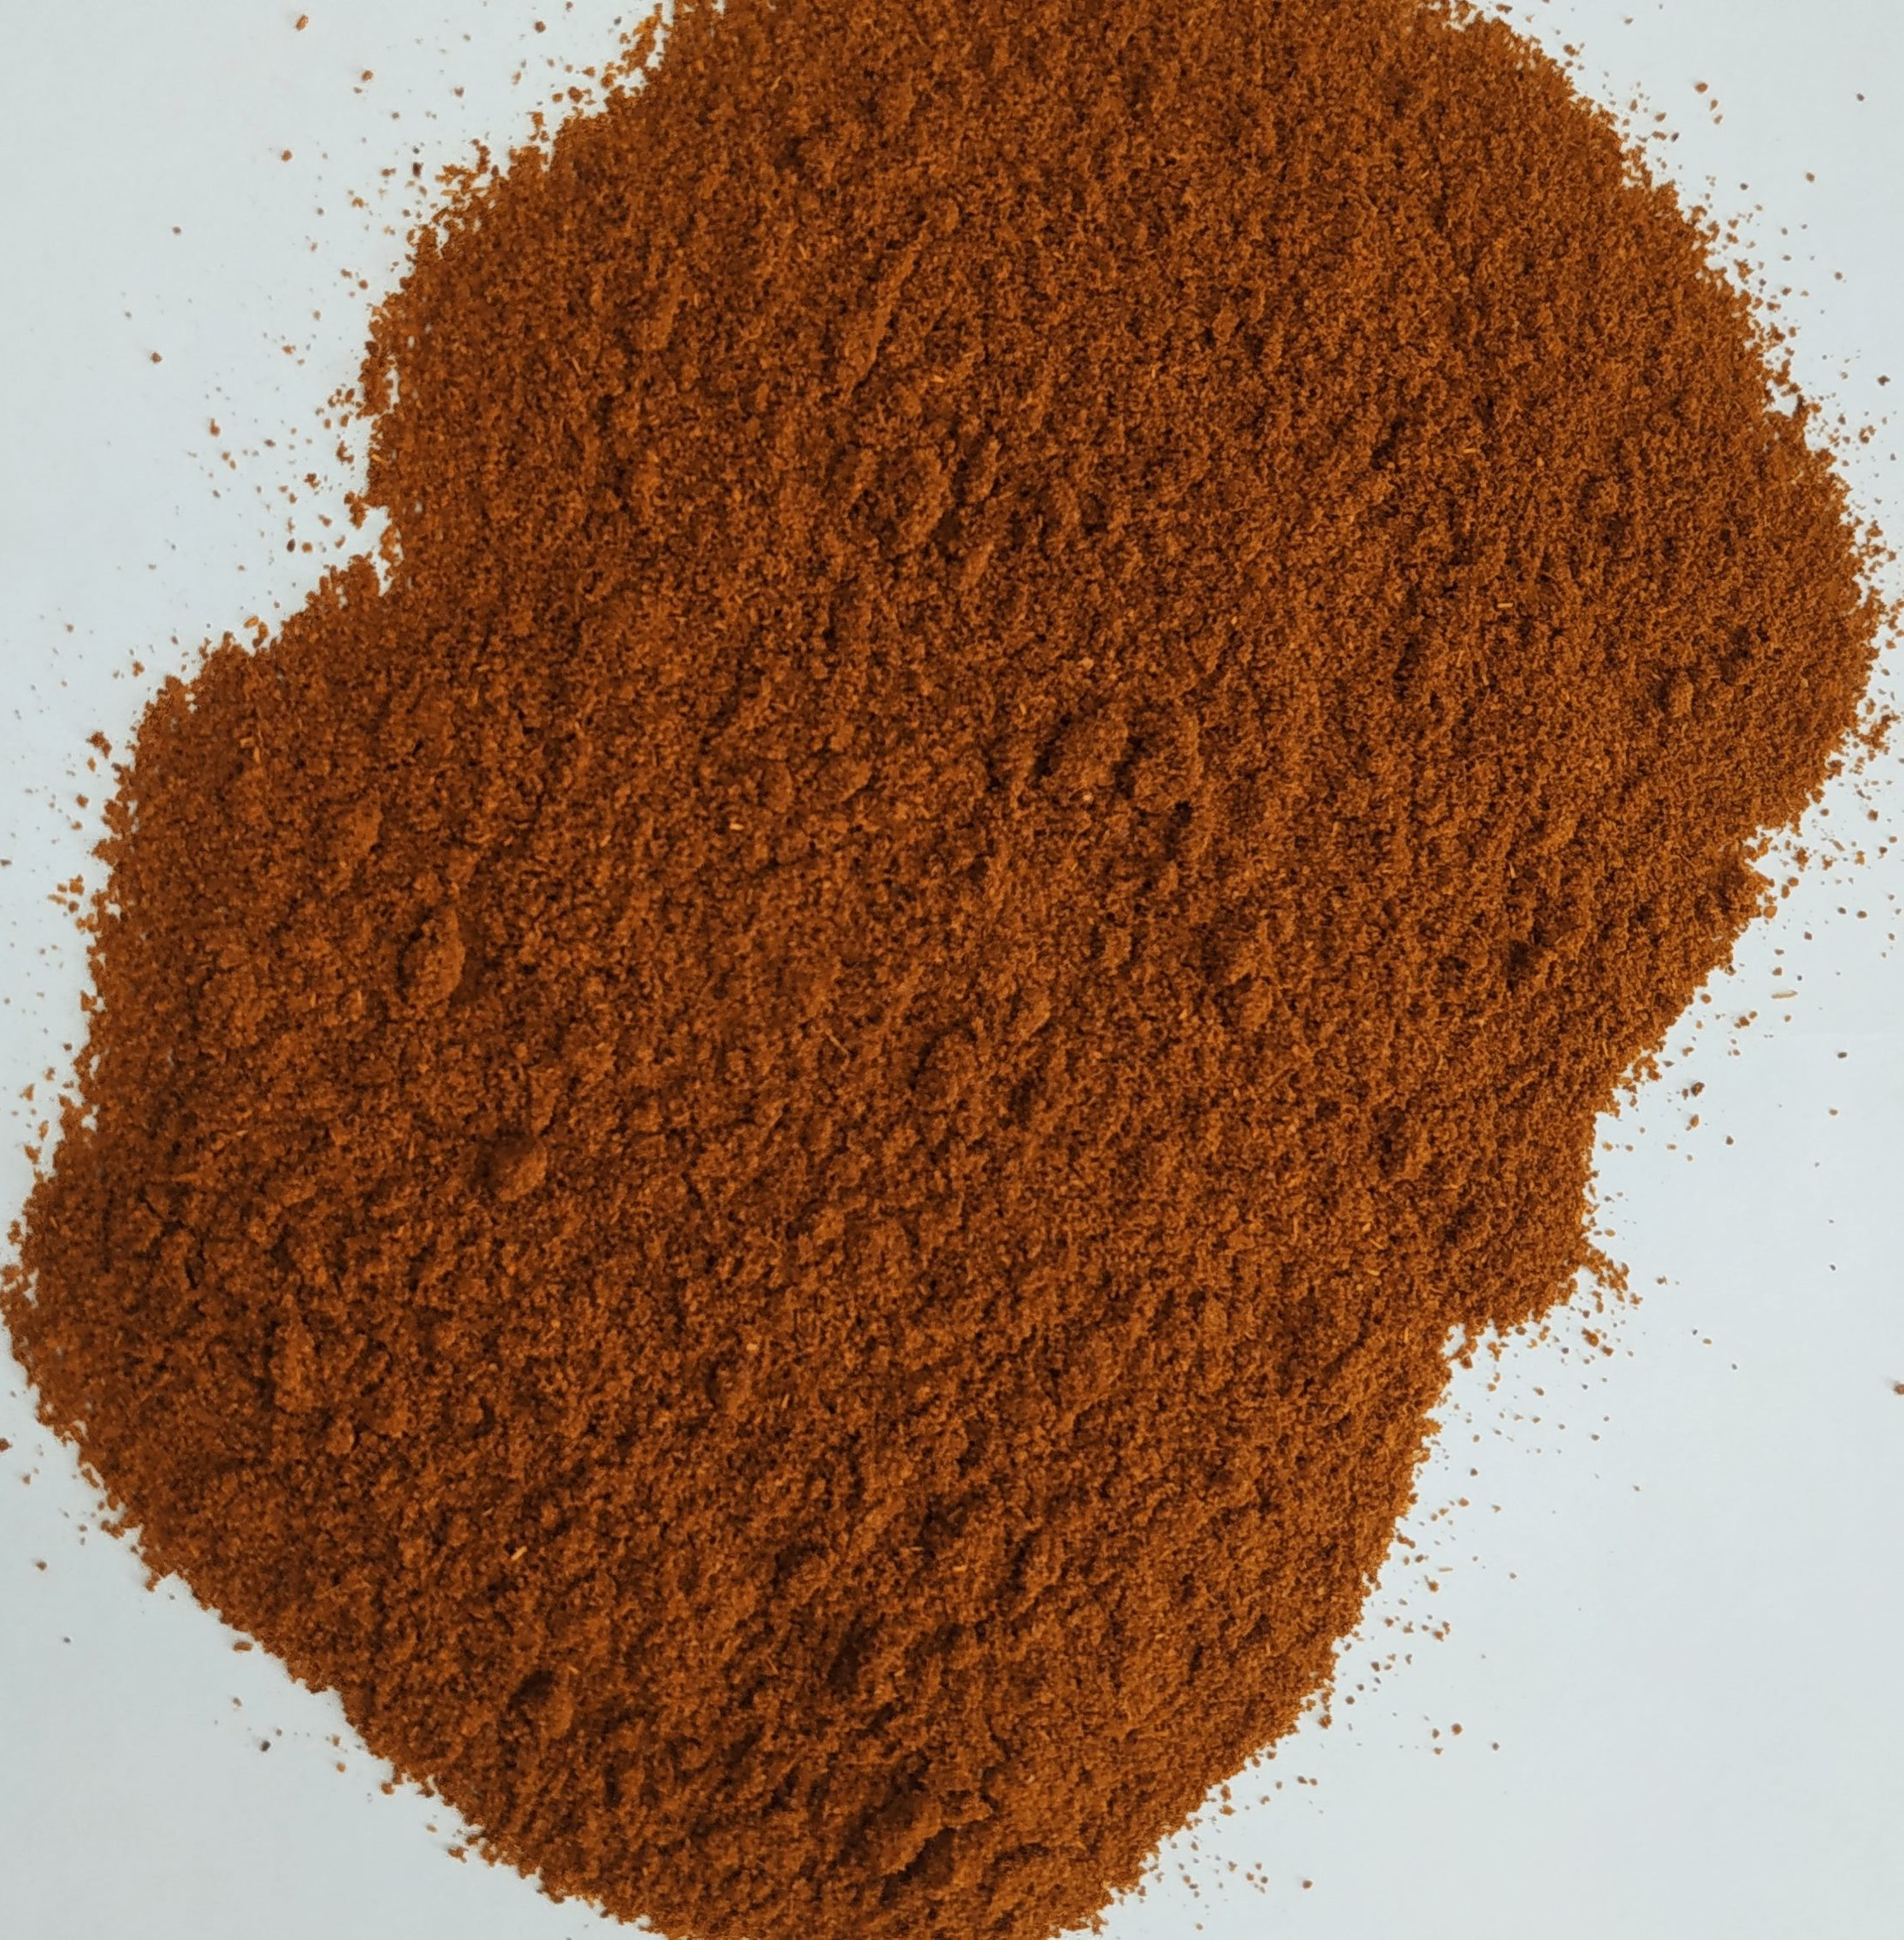 Перец красный молотый всорт, меш. 25 кг (Индия).jpg